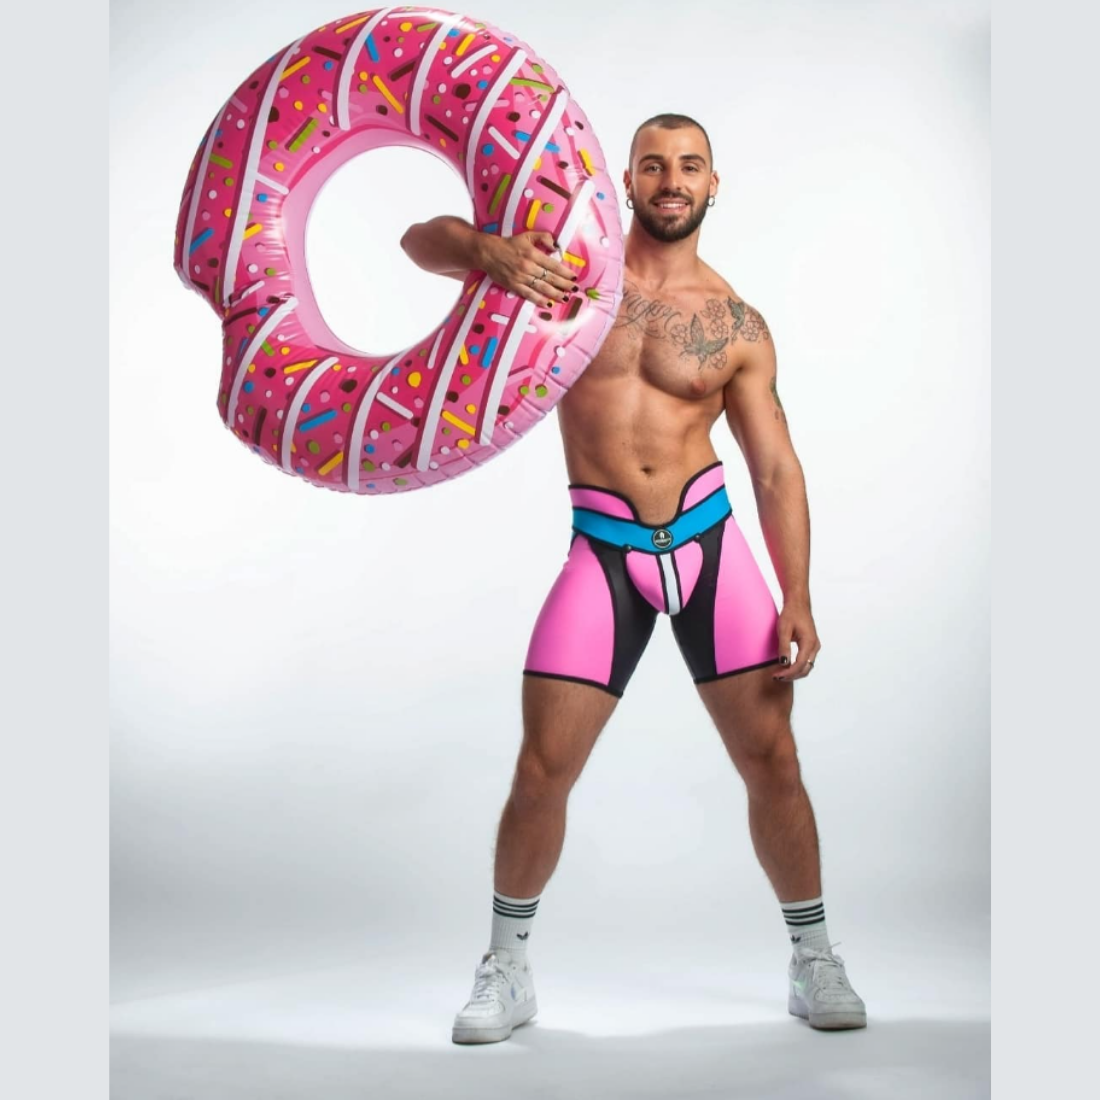 Unieke roze short met hoge tailleband en zwarte, blauwe en witte accenten, ontworpen door het Italiaanse modehuis Sparta’s Harness perfect voor gay mannen en te koop bij Flavourez.